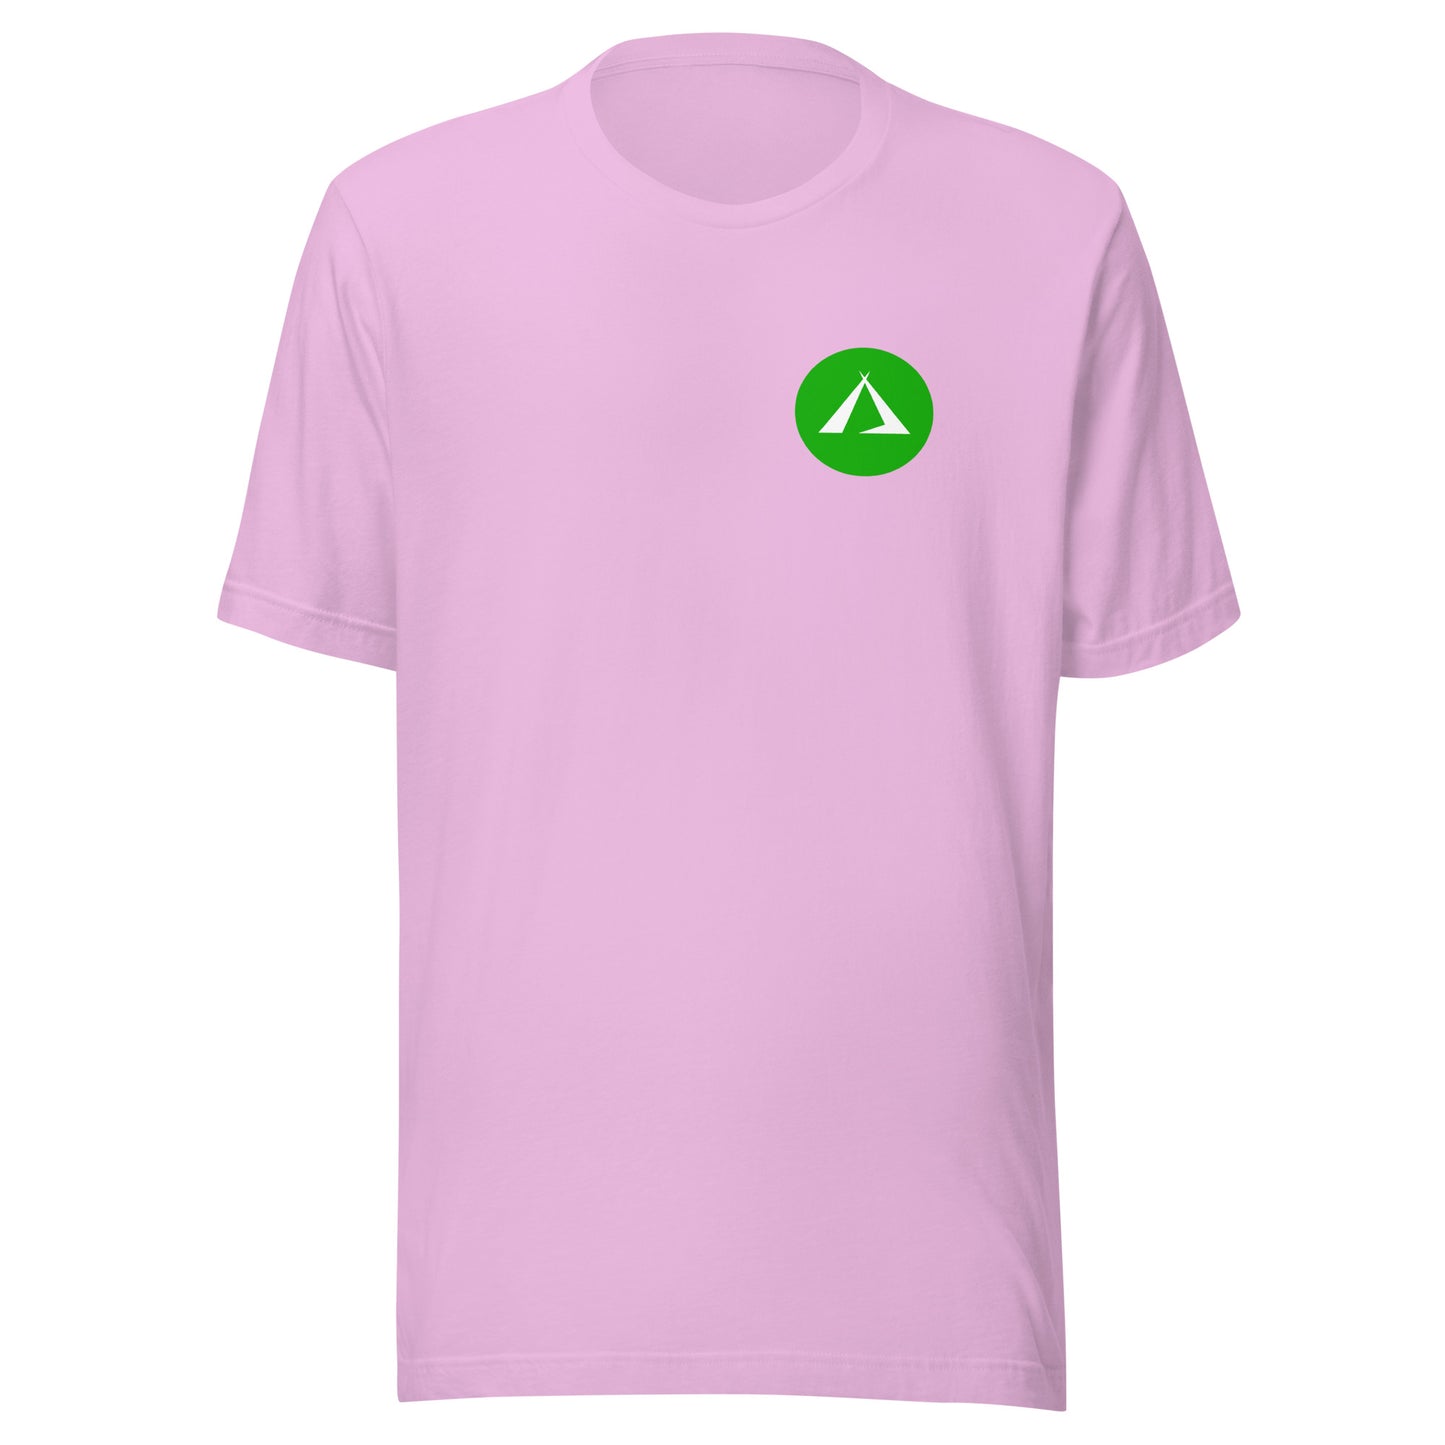 ANOYNTD LittleTeePee(Gr) Unisex t-shirt